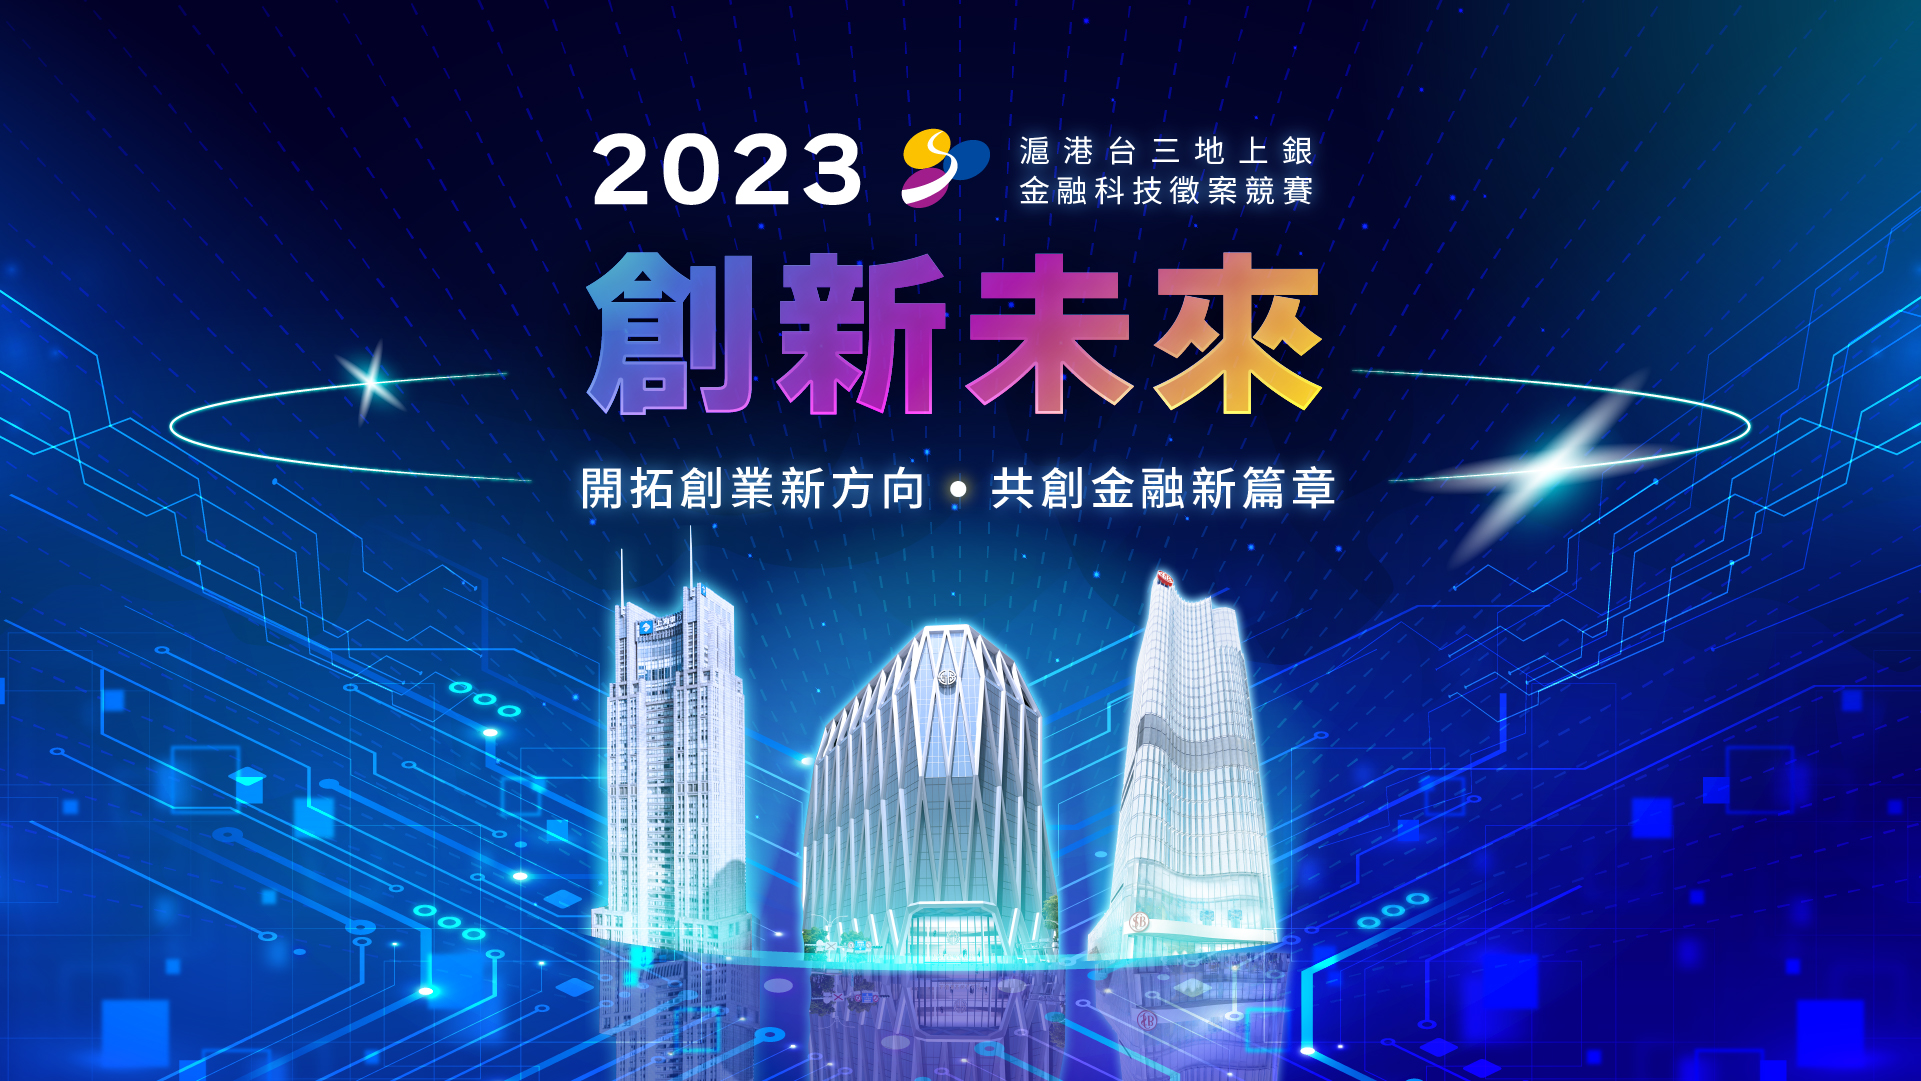 「滬港台三地上銀金融科技徵案競賽-創新未來」